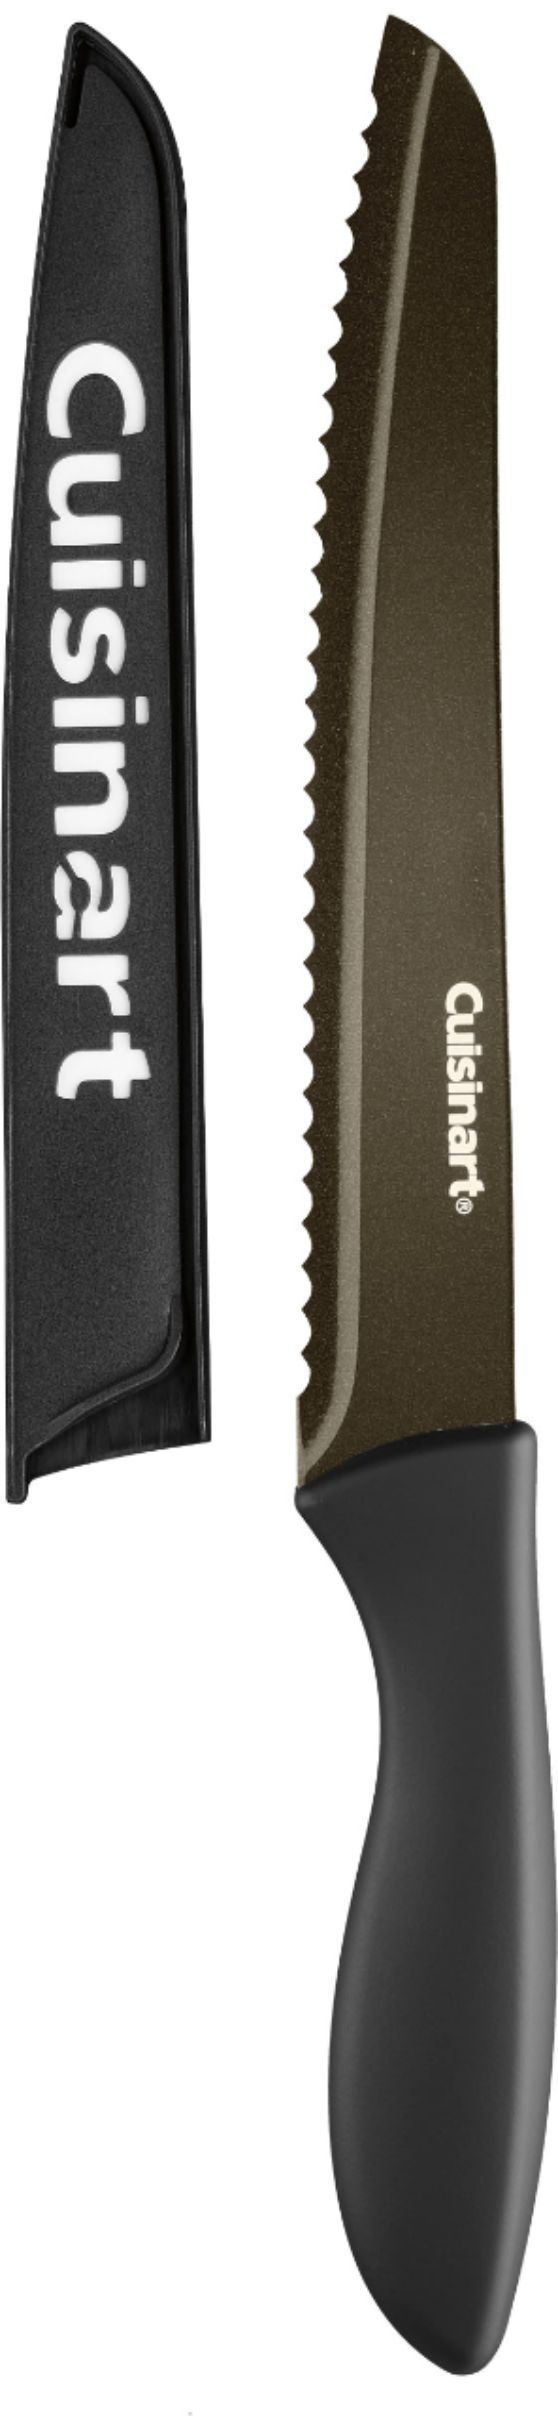 Cuisinart Classic 12-Piece Metallic Soft Grip Knife Set